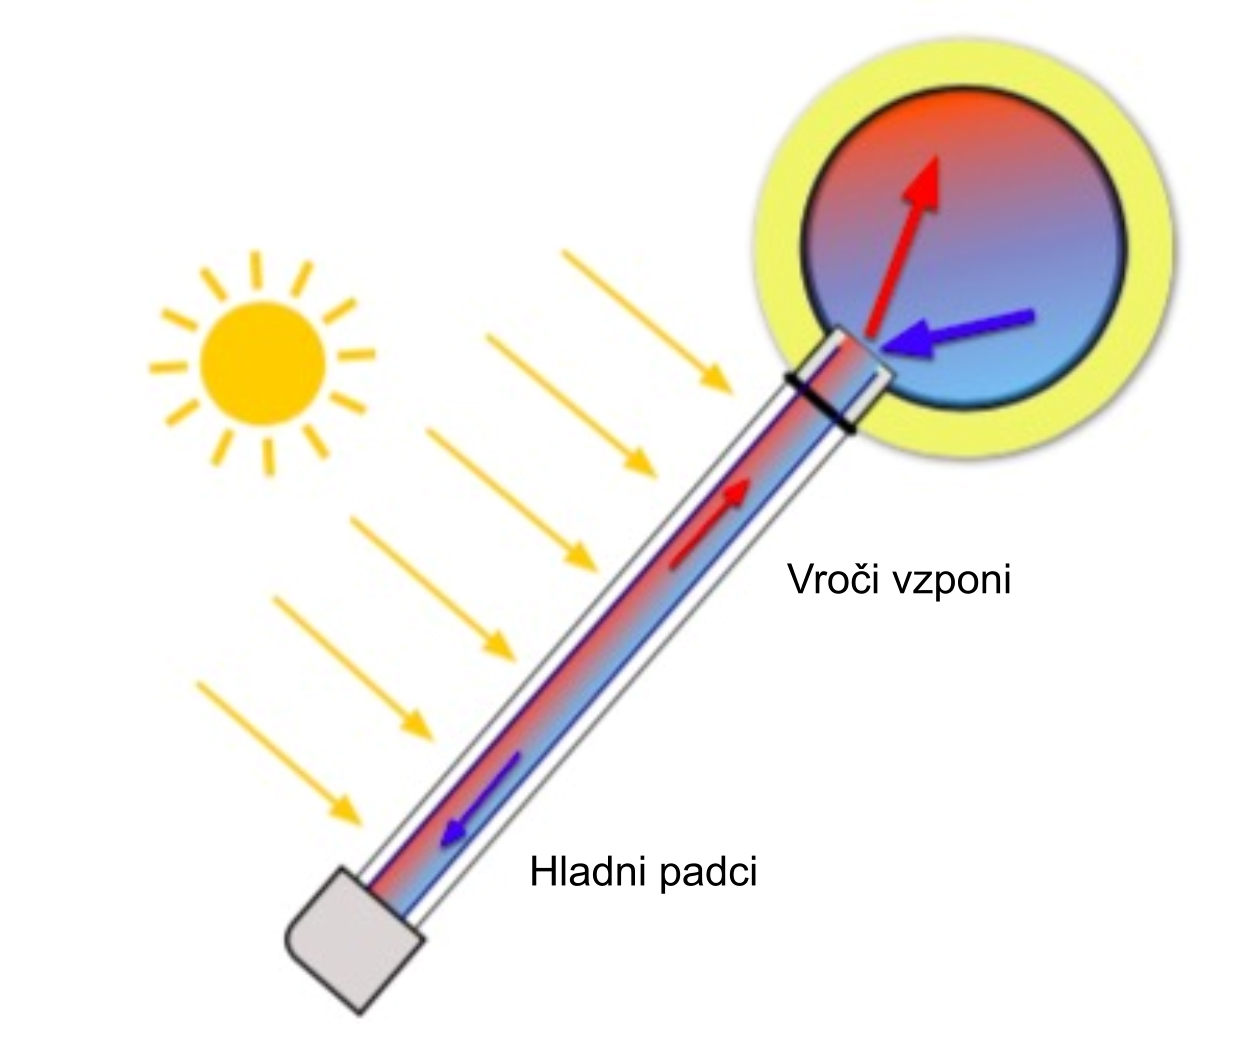 Sončni sprejemnik za termosifonsko ogrevanje vode -1